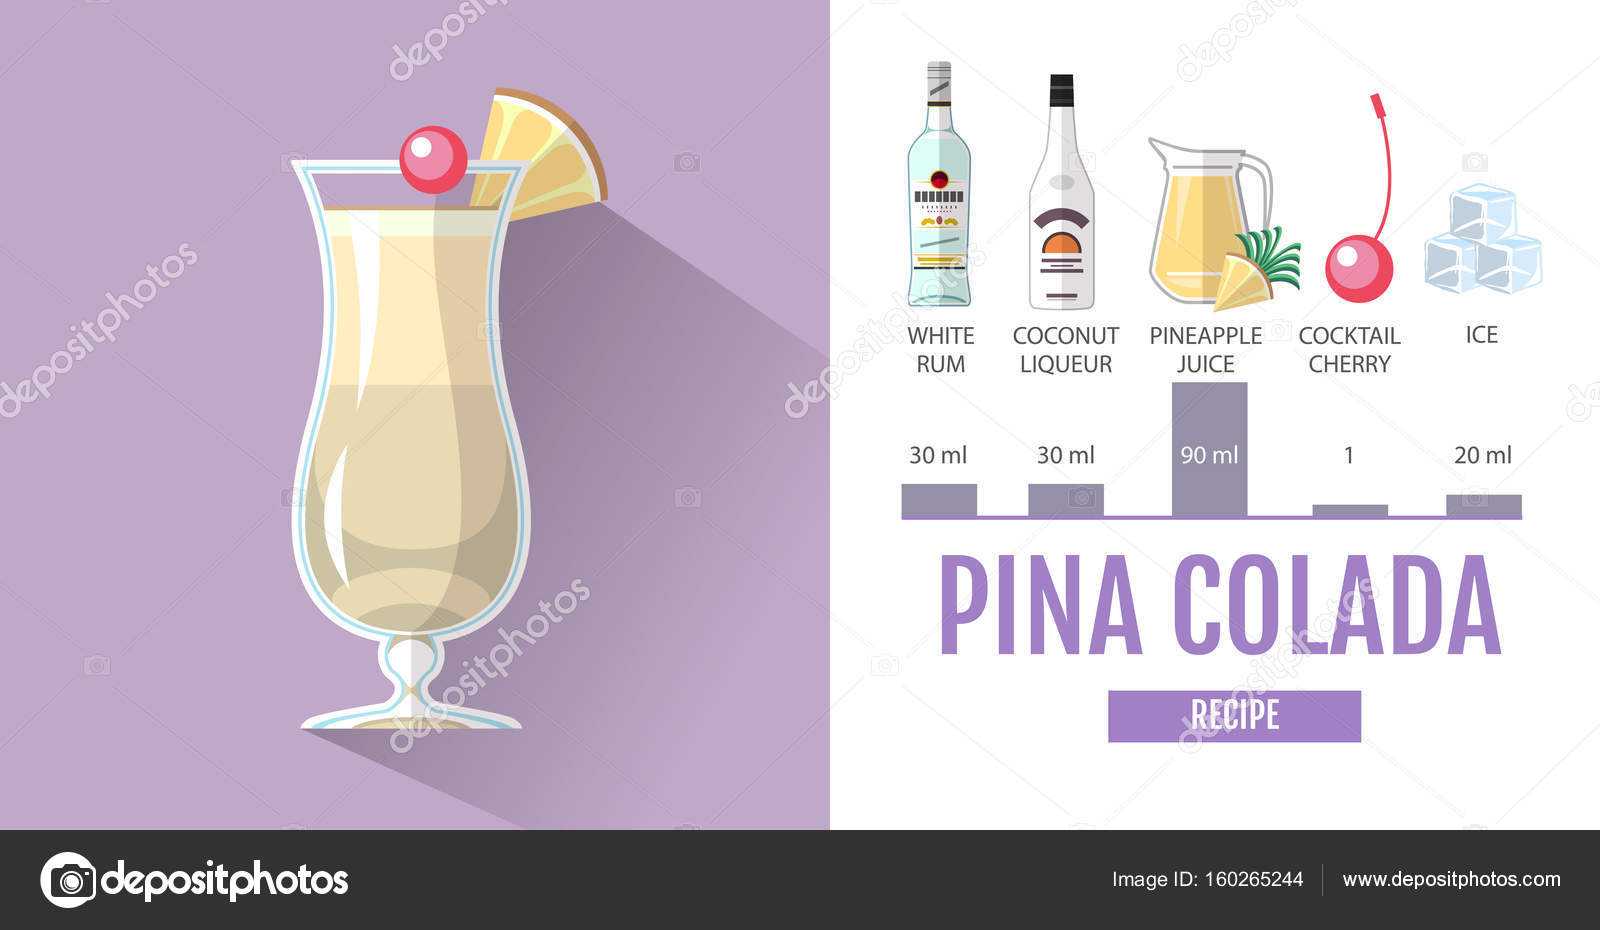 Коктейль пина колада – 6 оригинальных рецептов приготовления алкогольного и безалкогольного коктейля